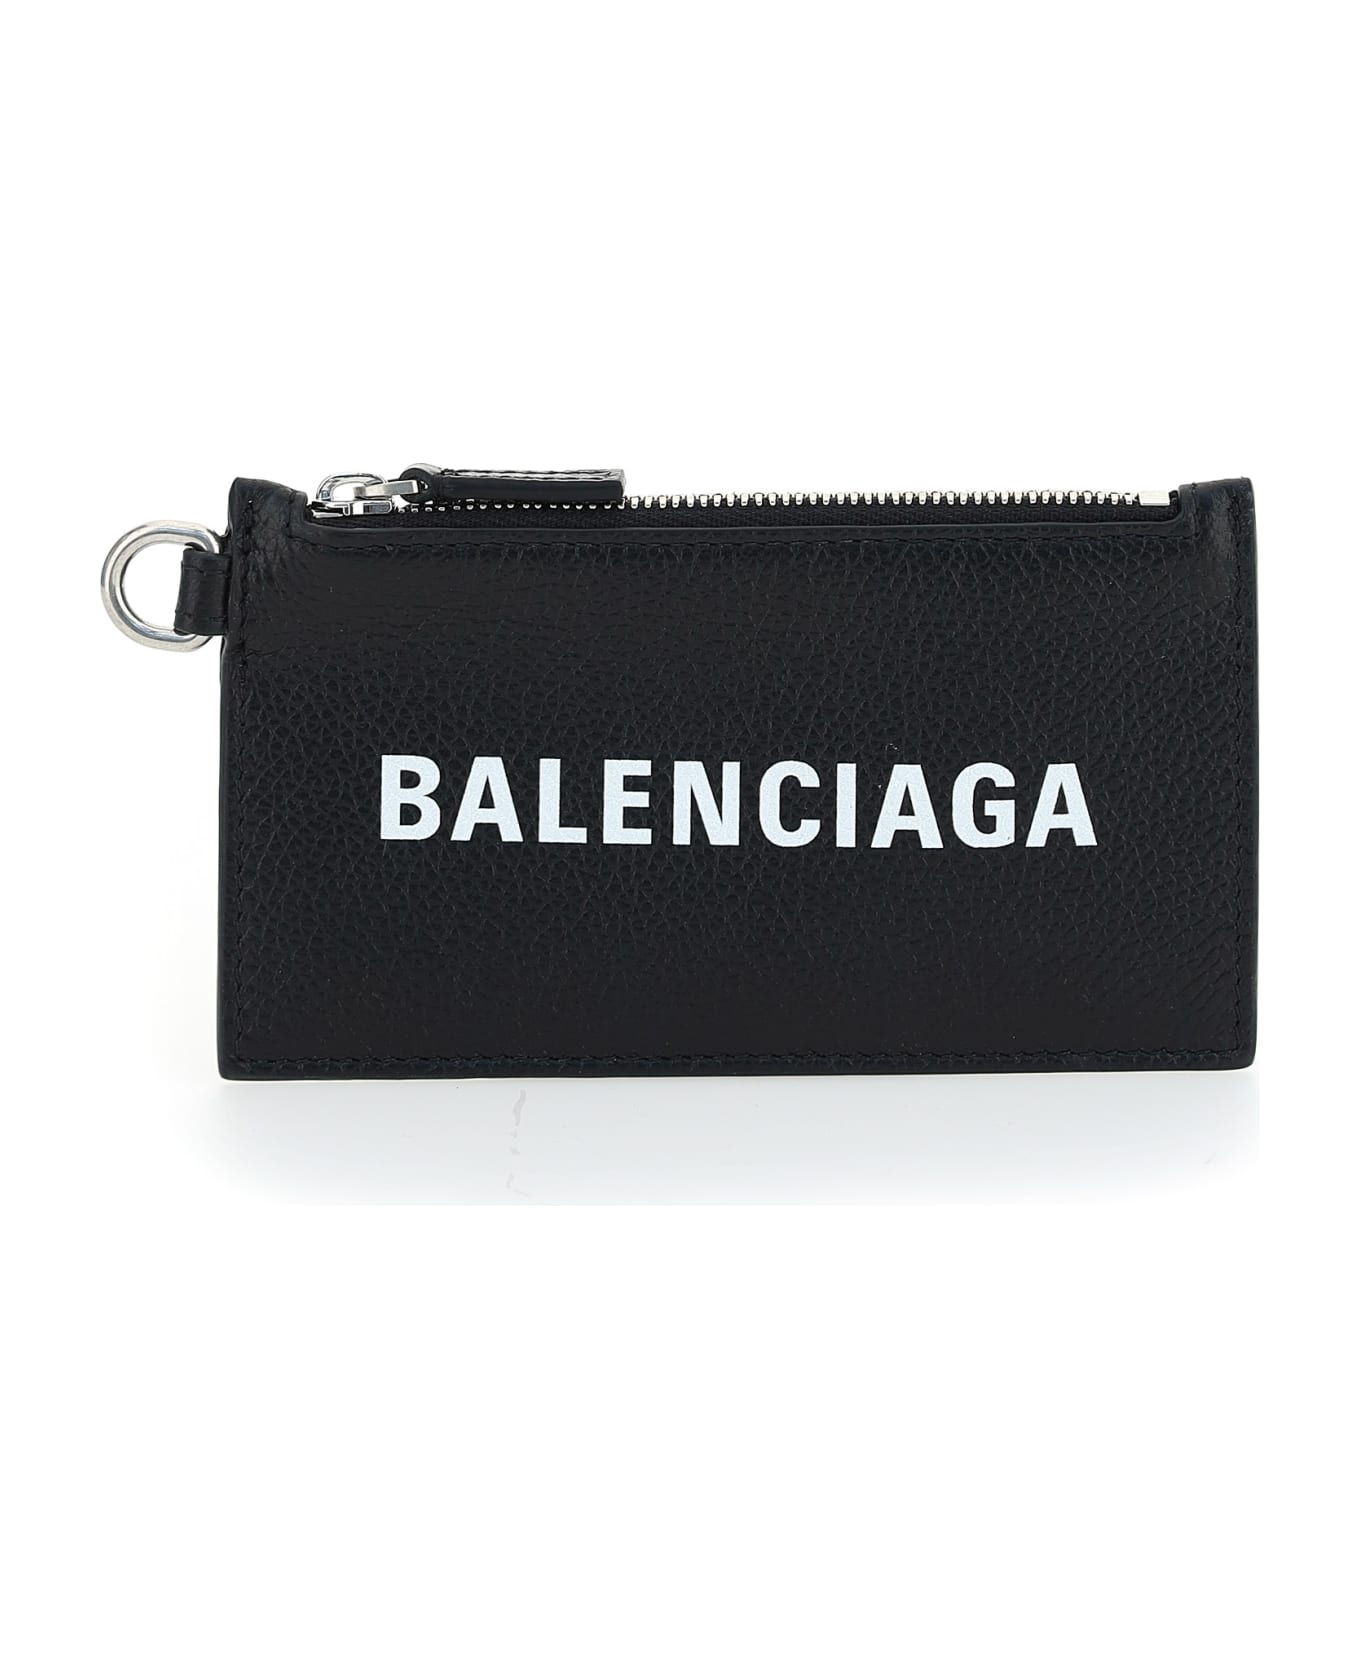 Balenciaga Wallet - Black/l White